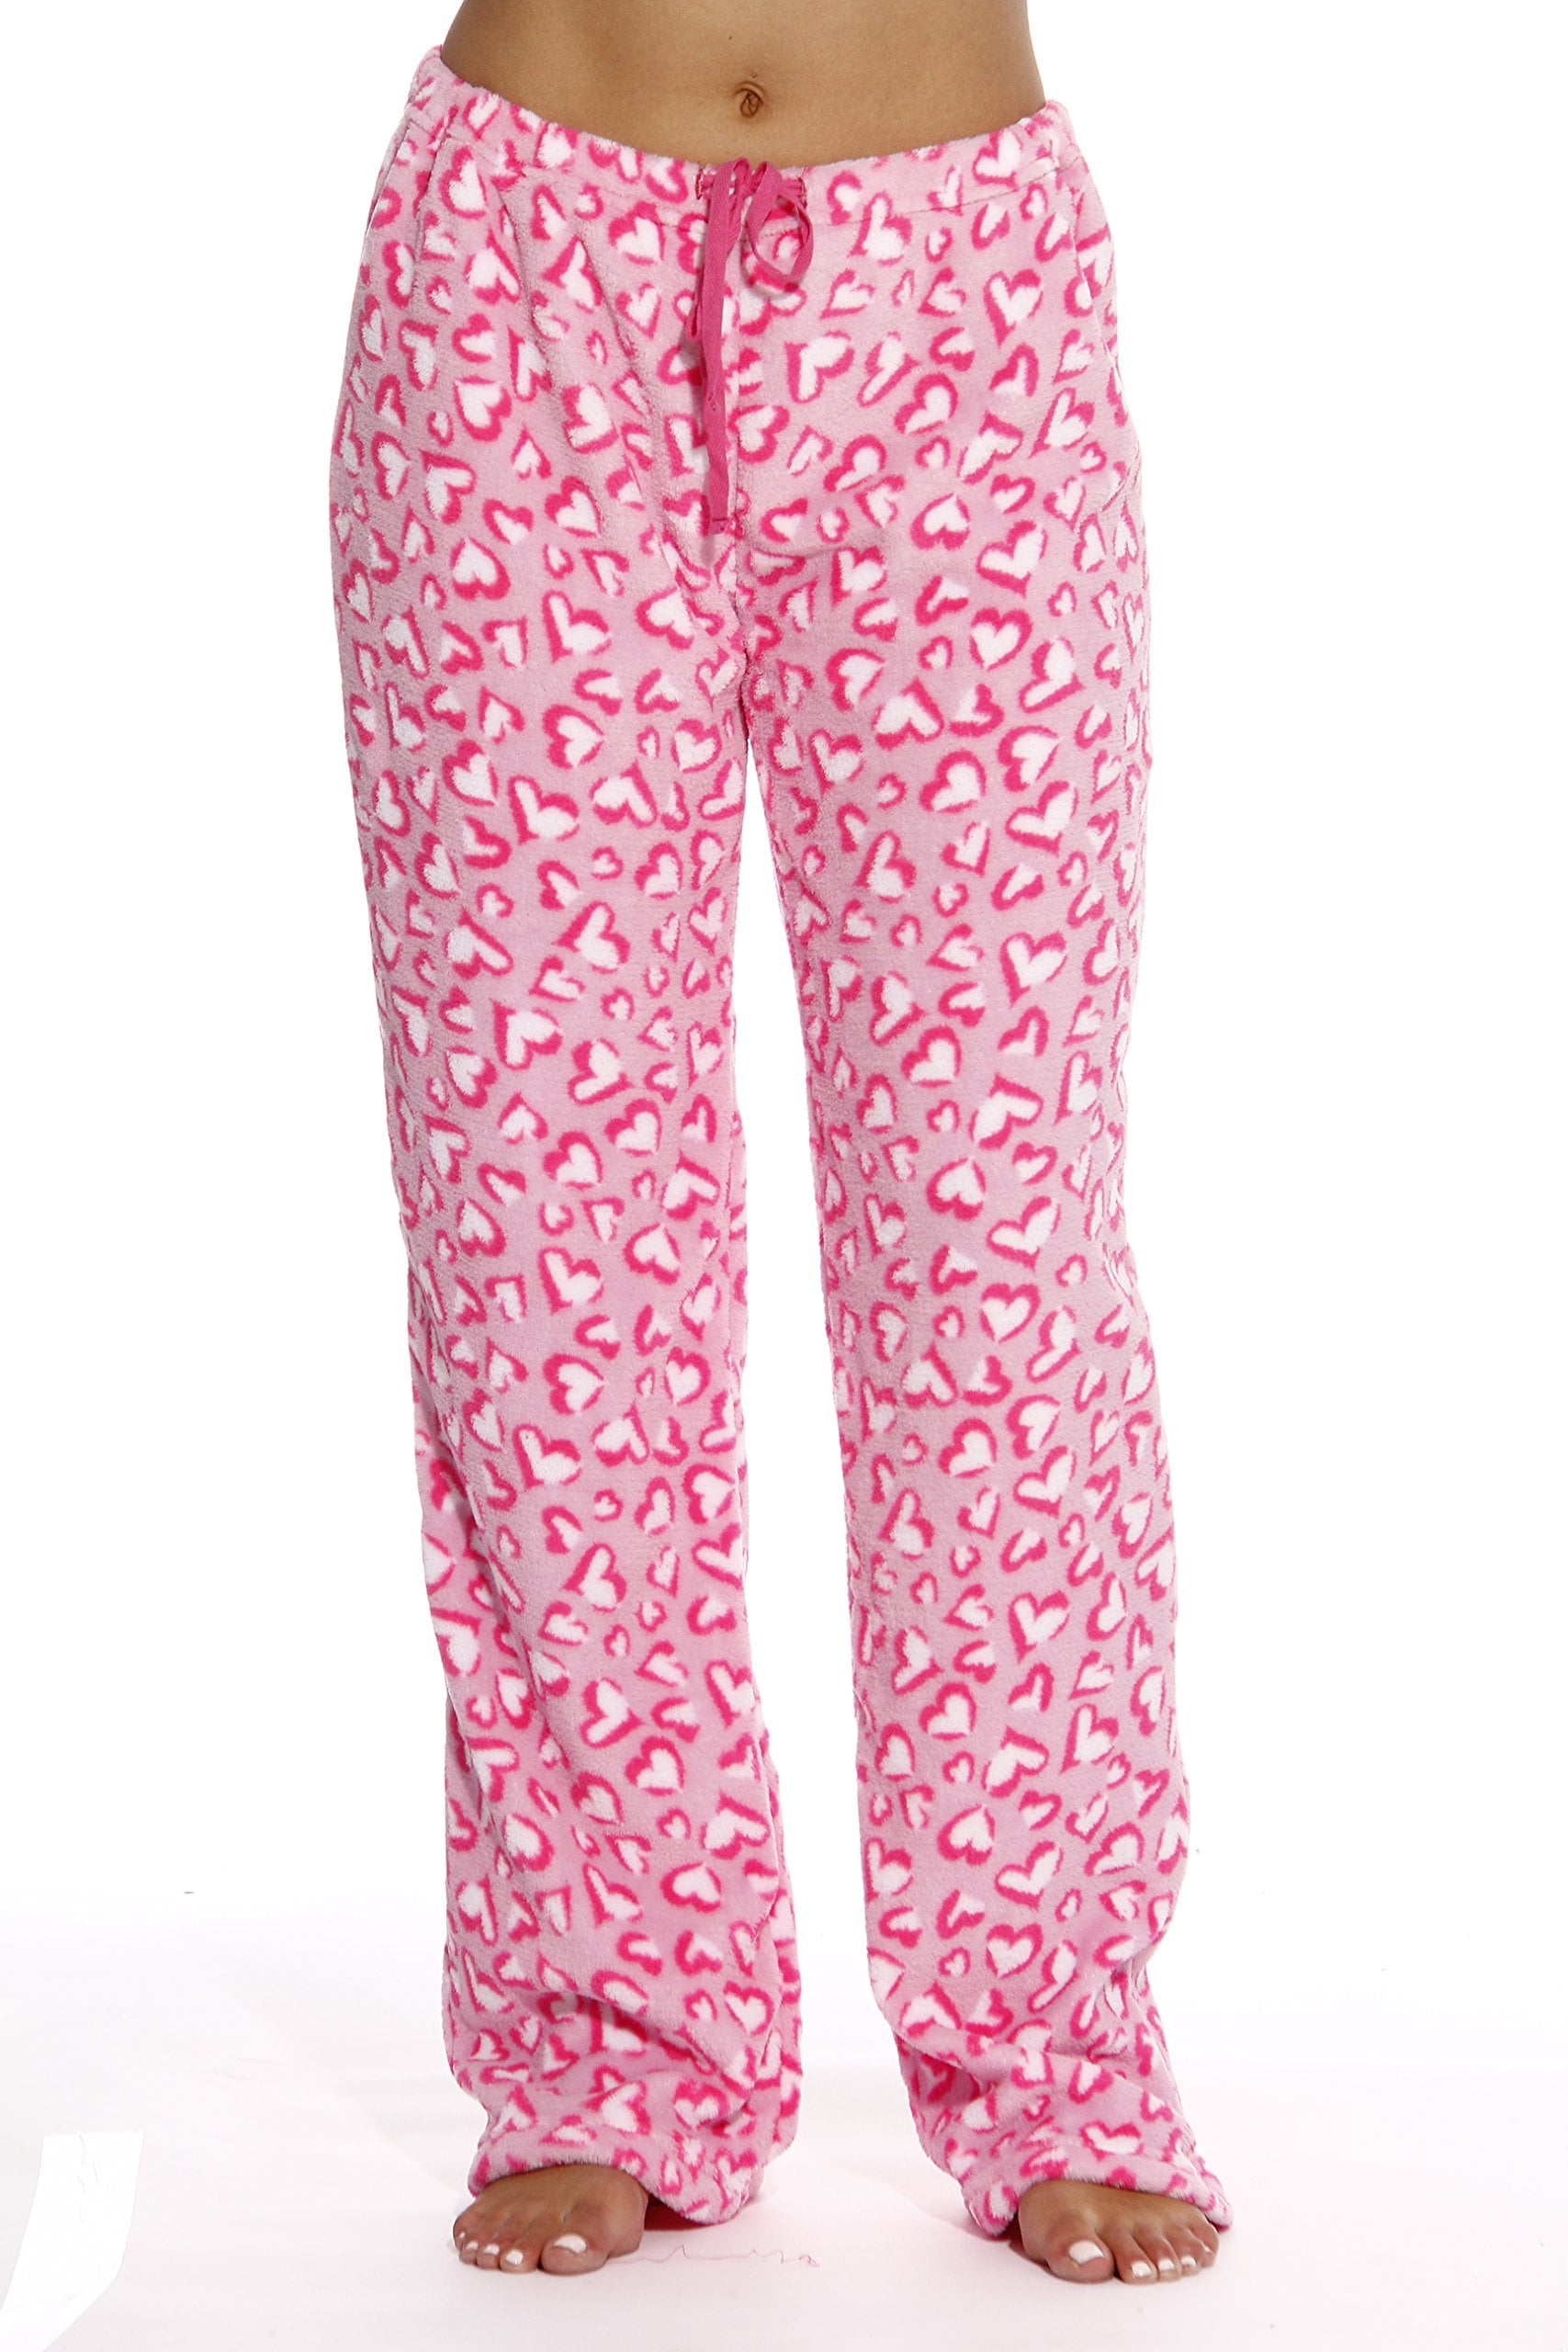 Just Love Women's Plush Pajama Pants - Petite to Plus Size Pajamas (1X ...